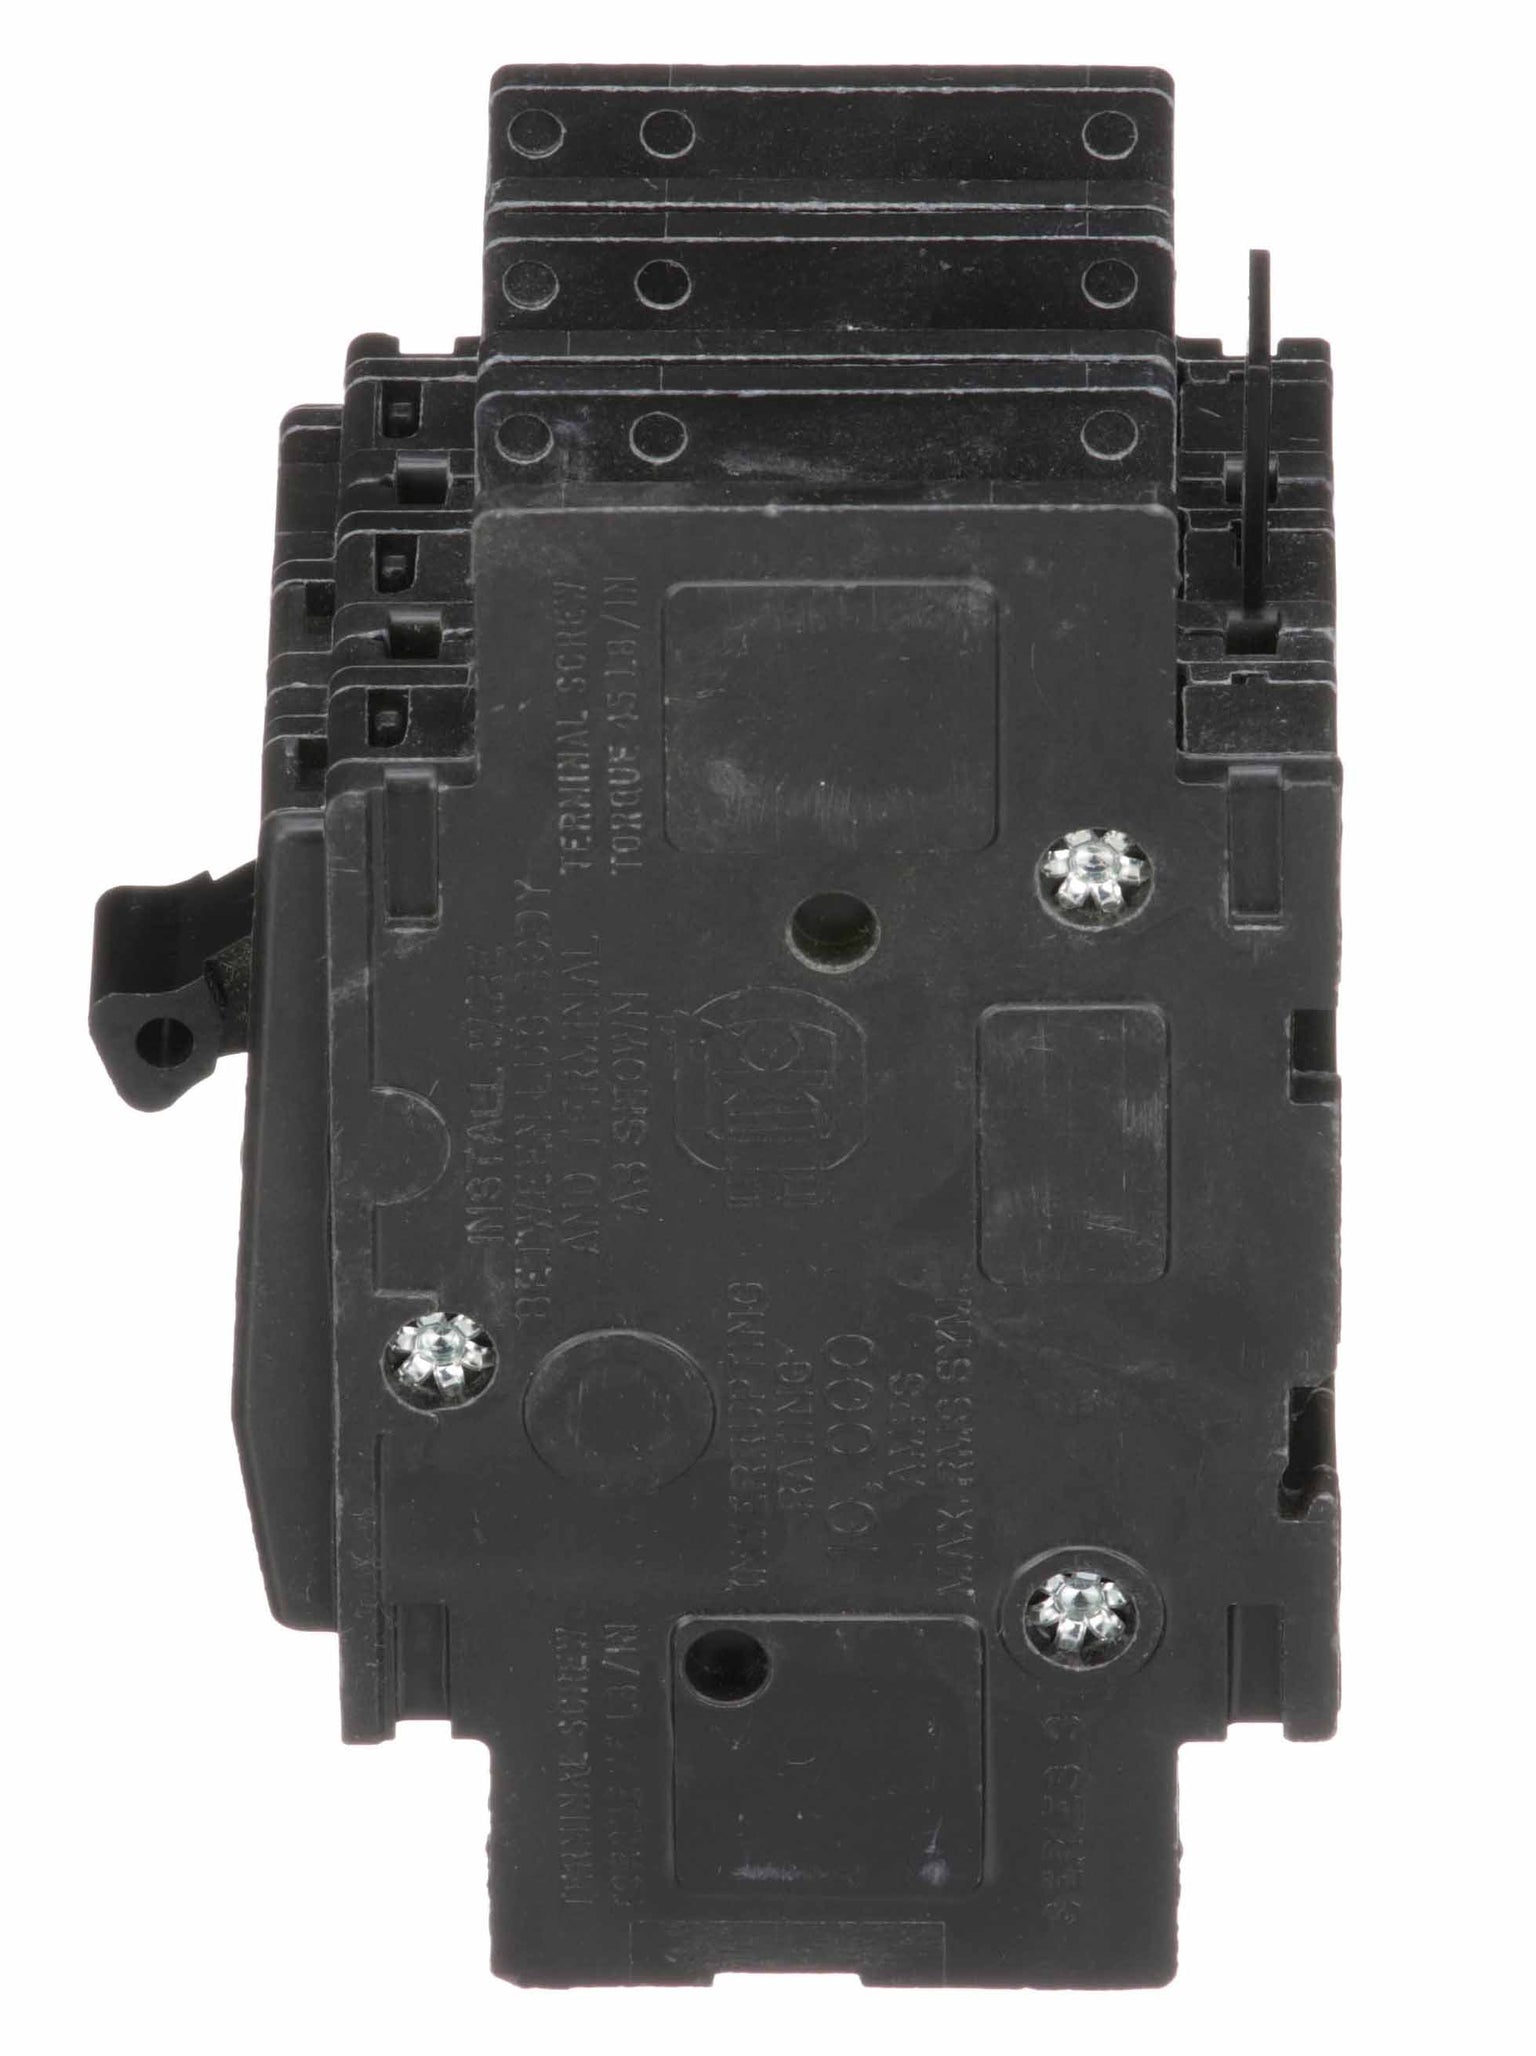 QOU330 - Square D - 30 Amp Circuit Breaker